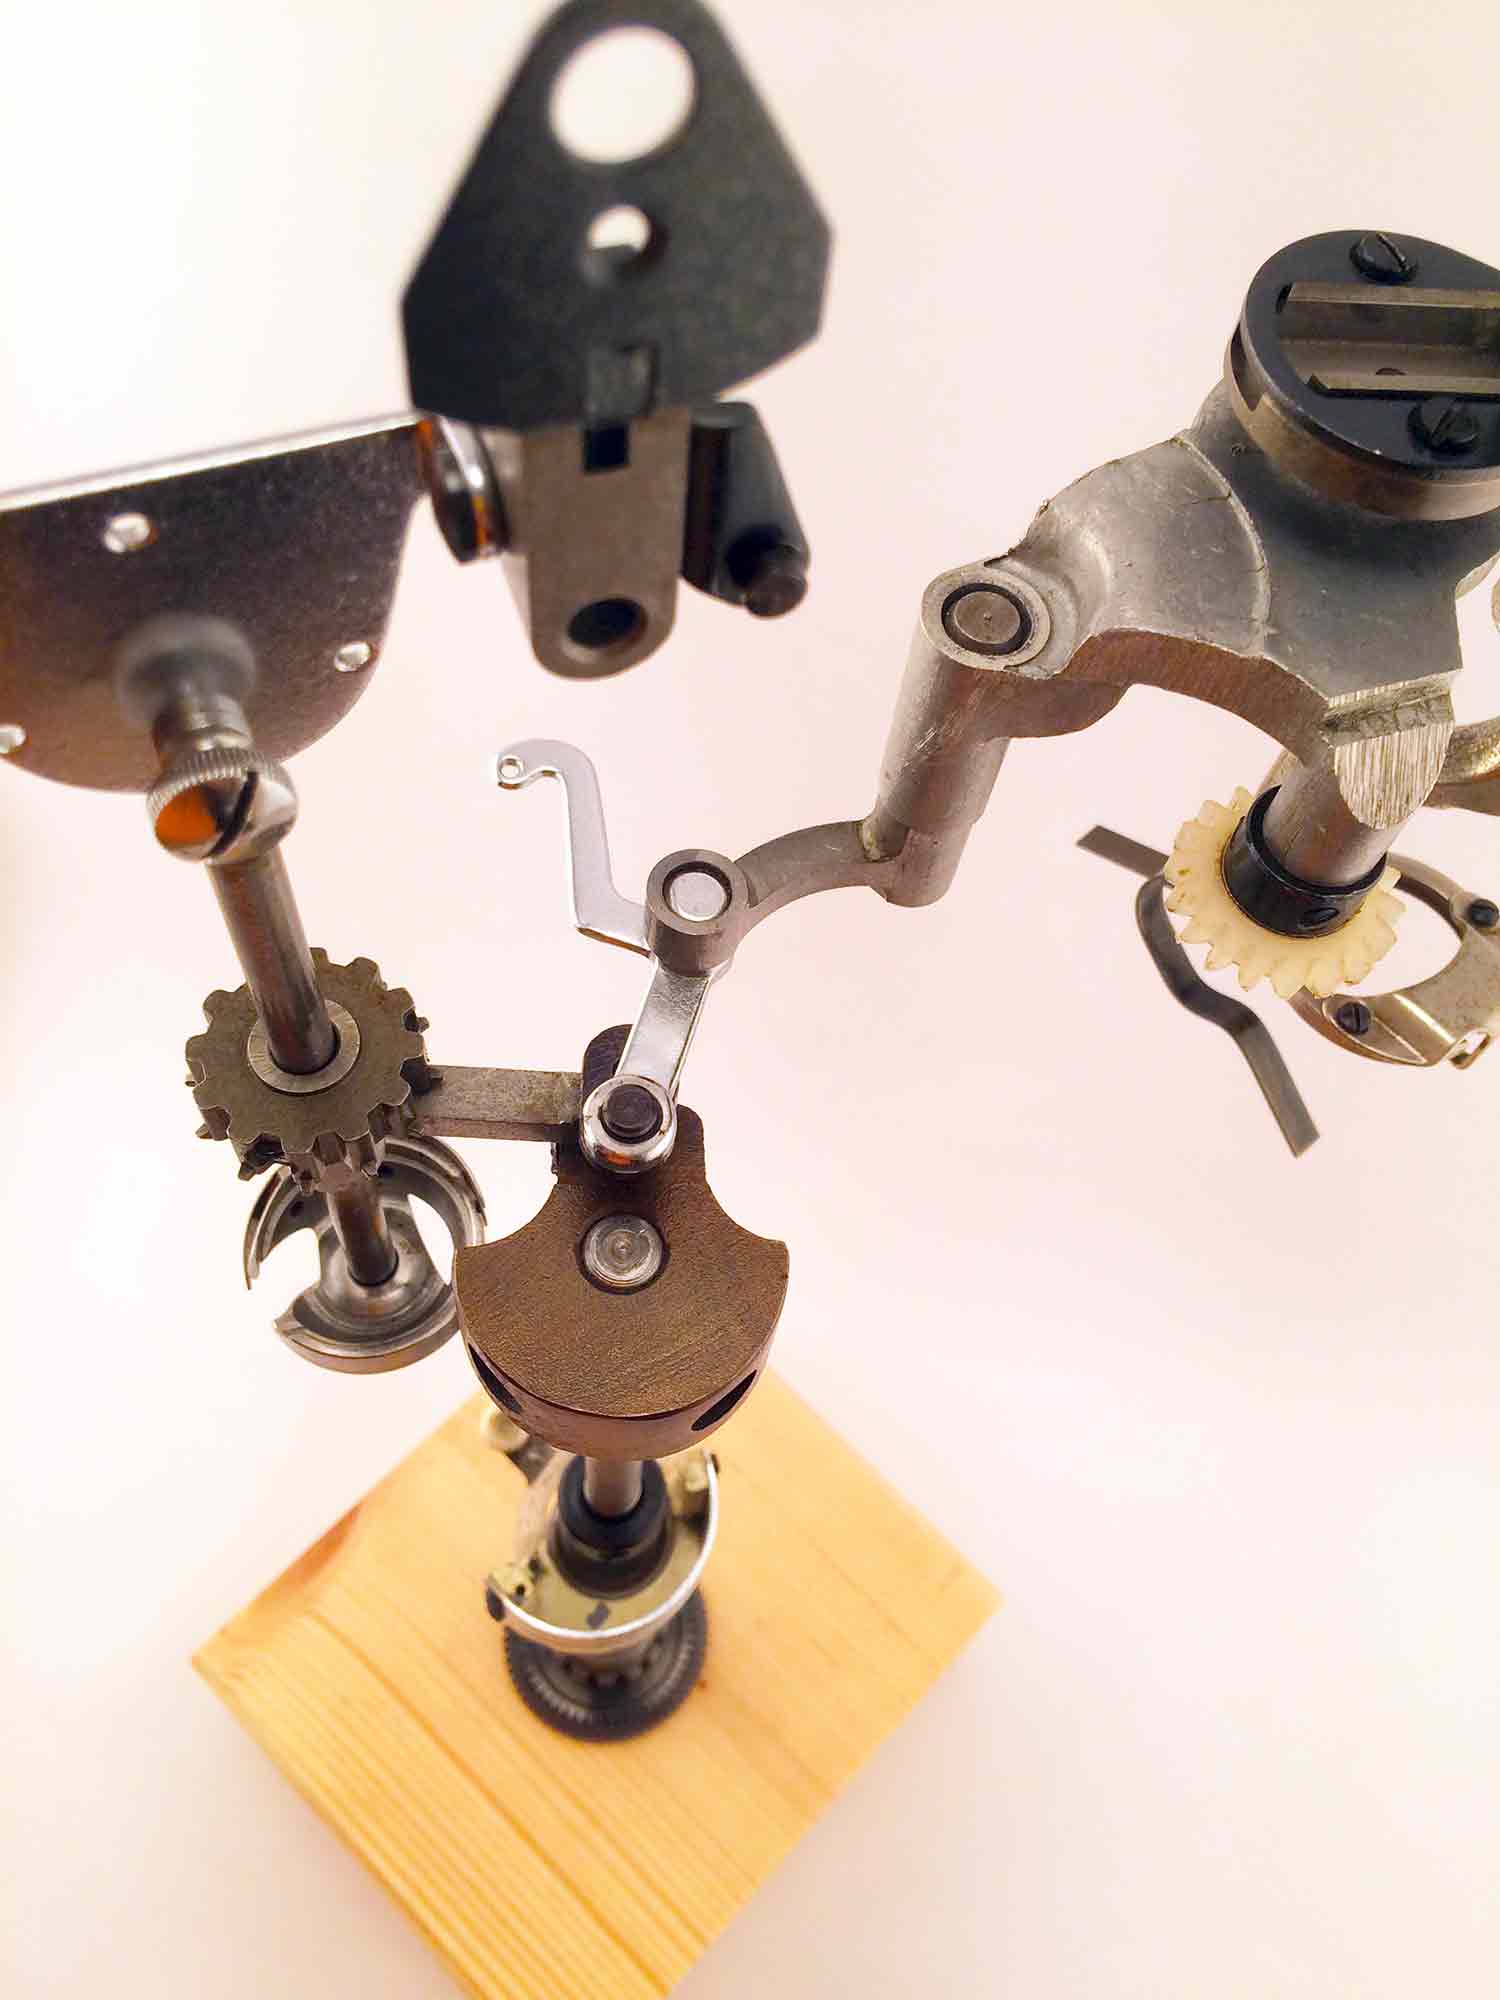 Sculpture of an interpretation of a sewing machine